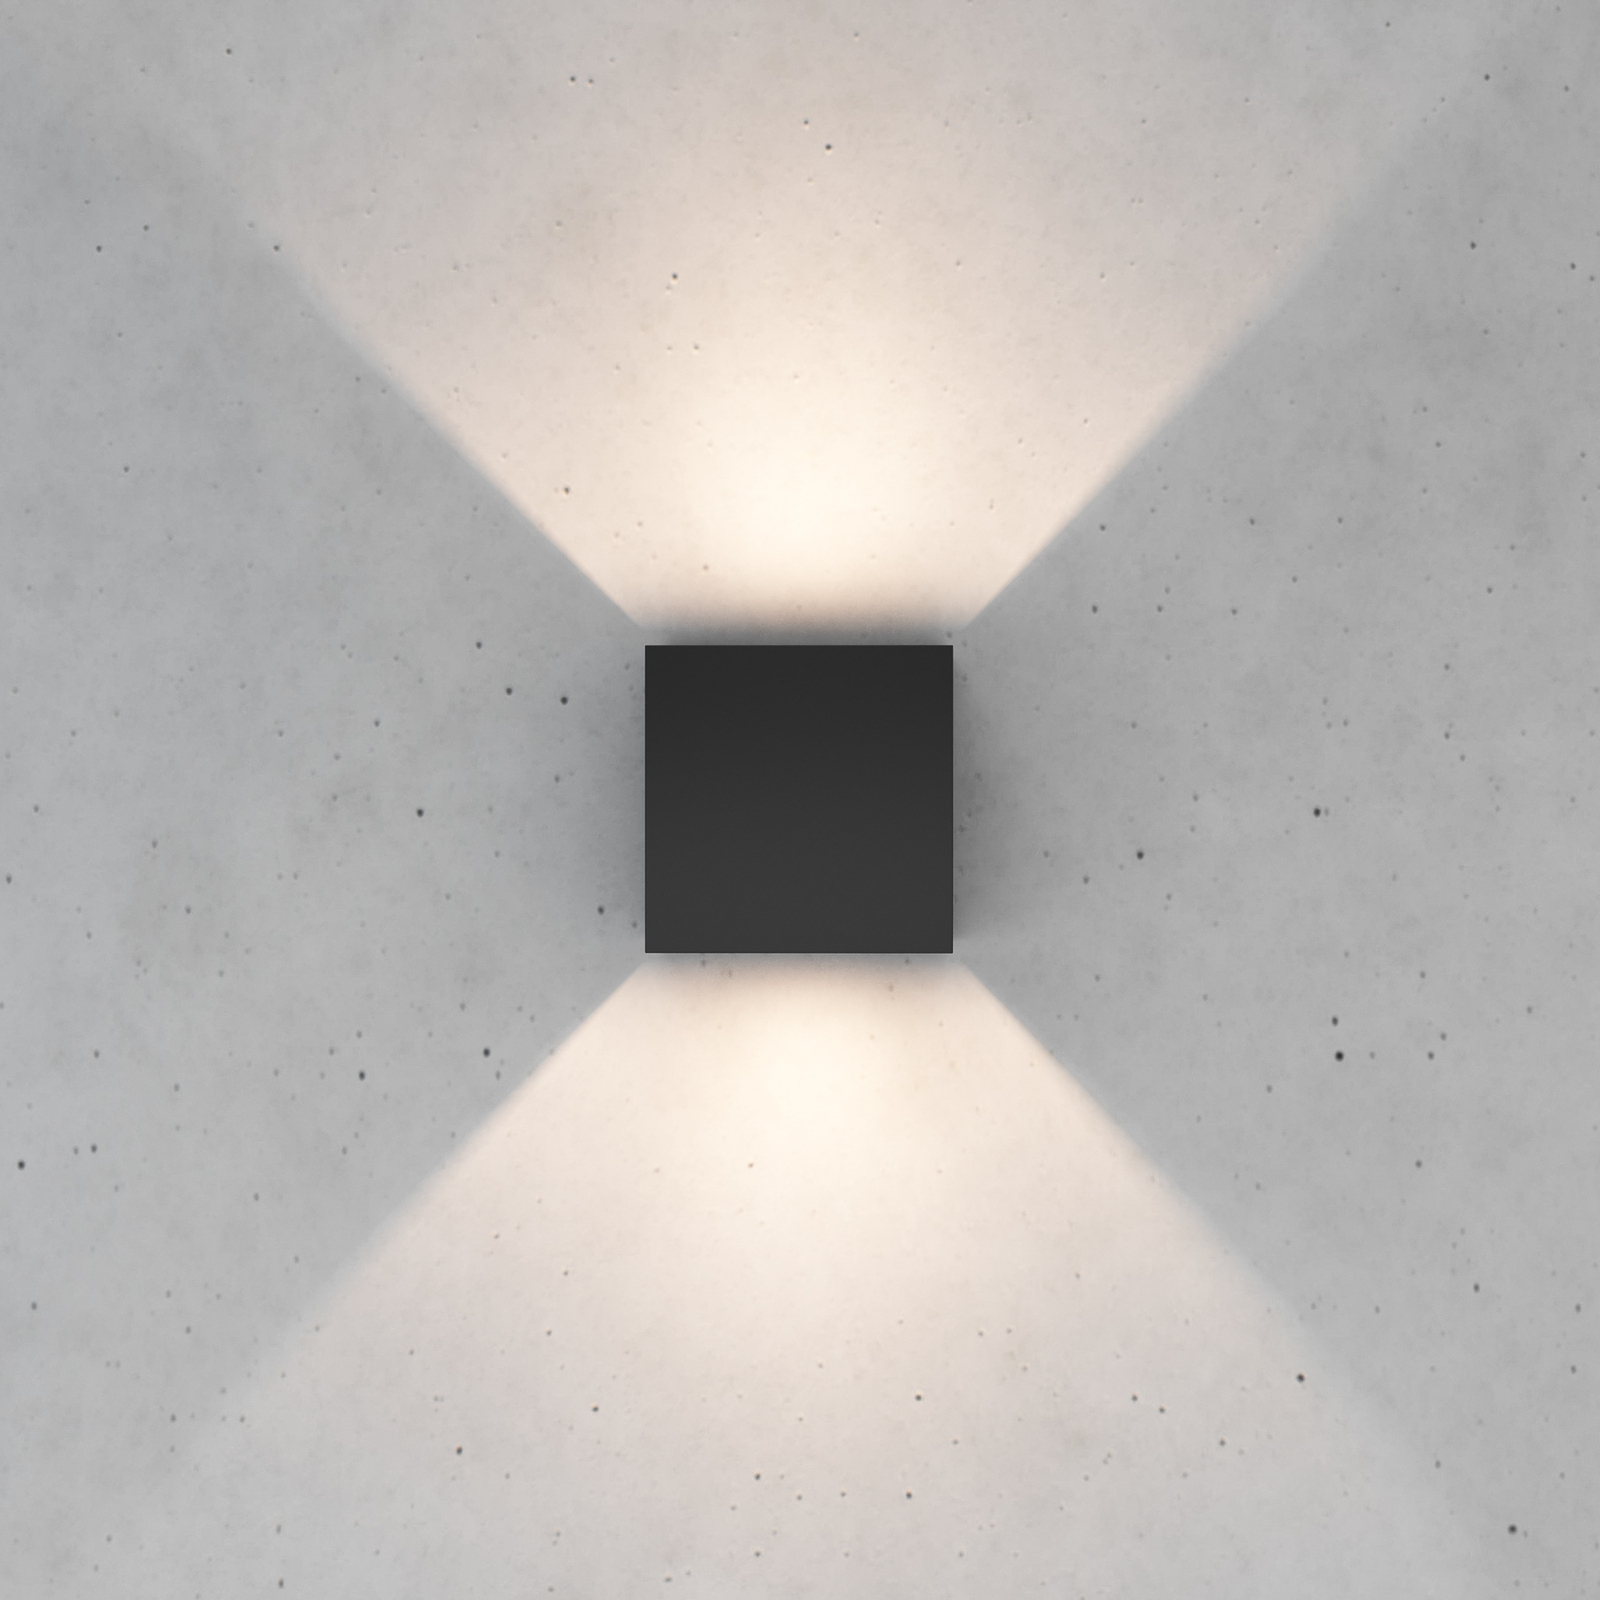 Zuza 2 stenska svetilka, črna, kovinska, štiri krila, 10 cm, G9